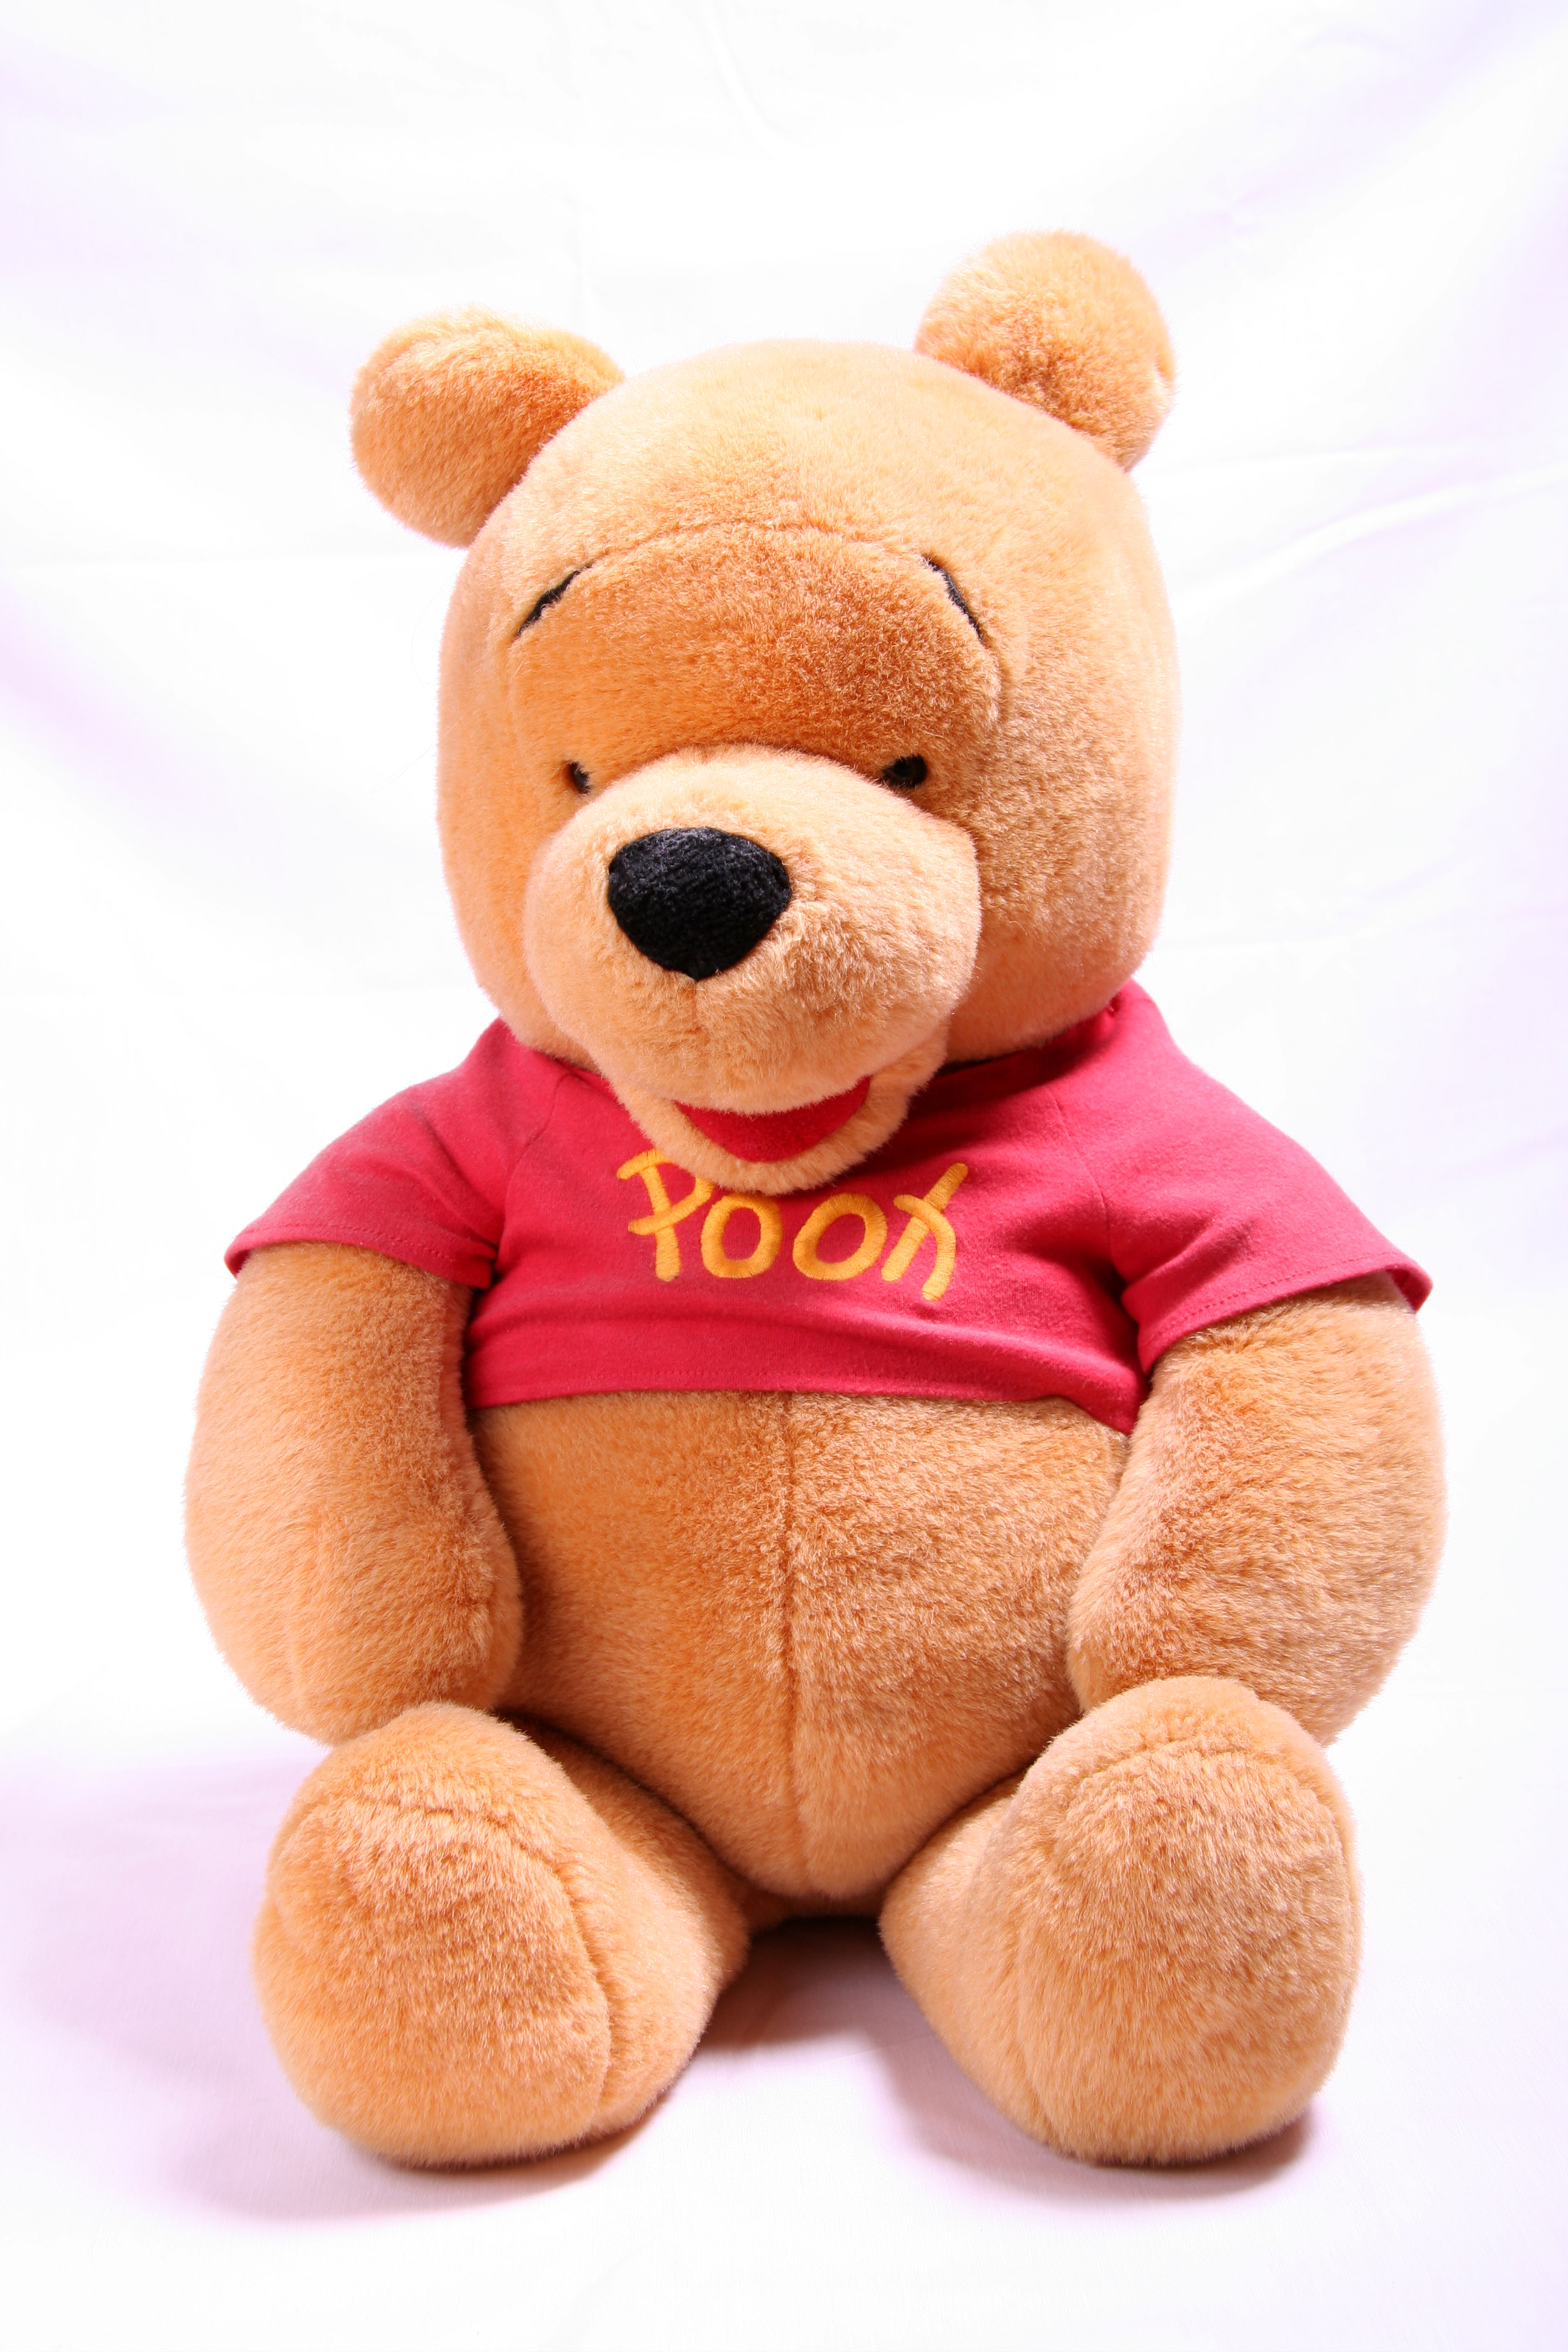 Letbys Zimmer war übersät mit Kinderspielzeug, darunter ein Winnie-the-Pooh-Bär